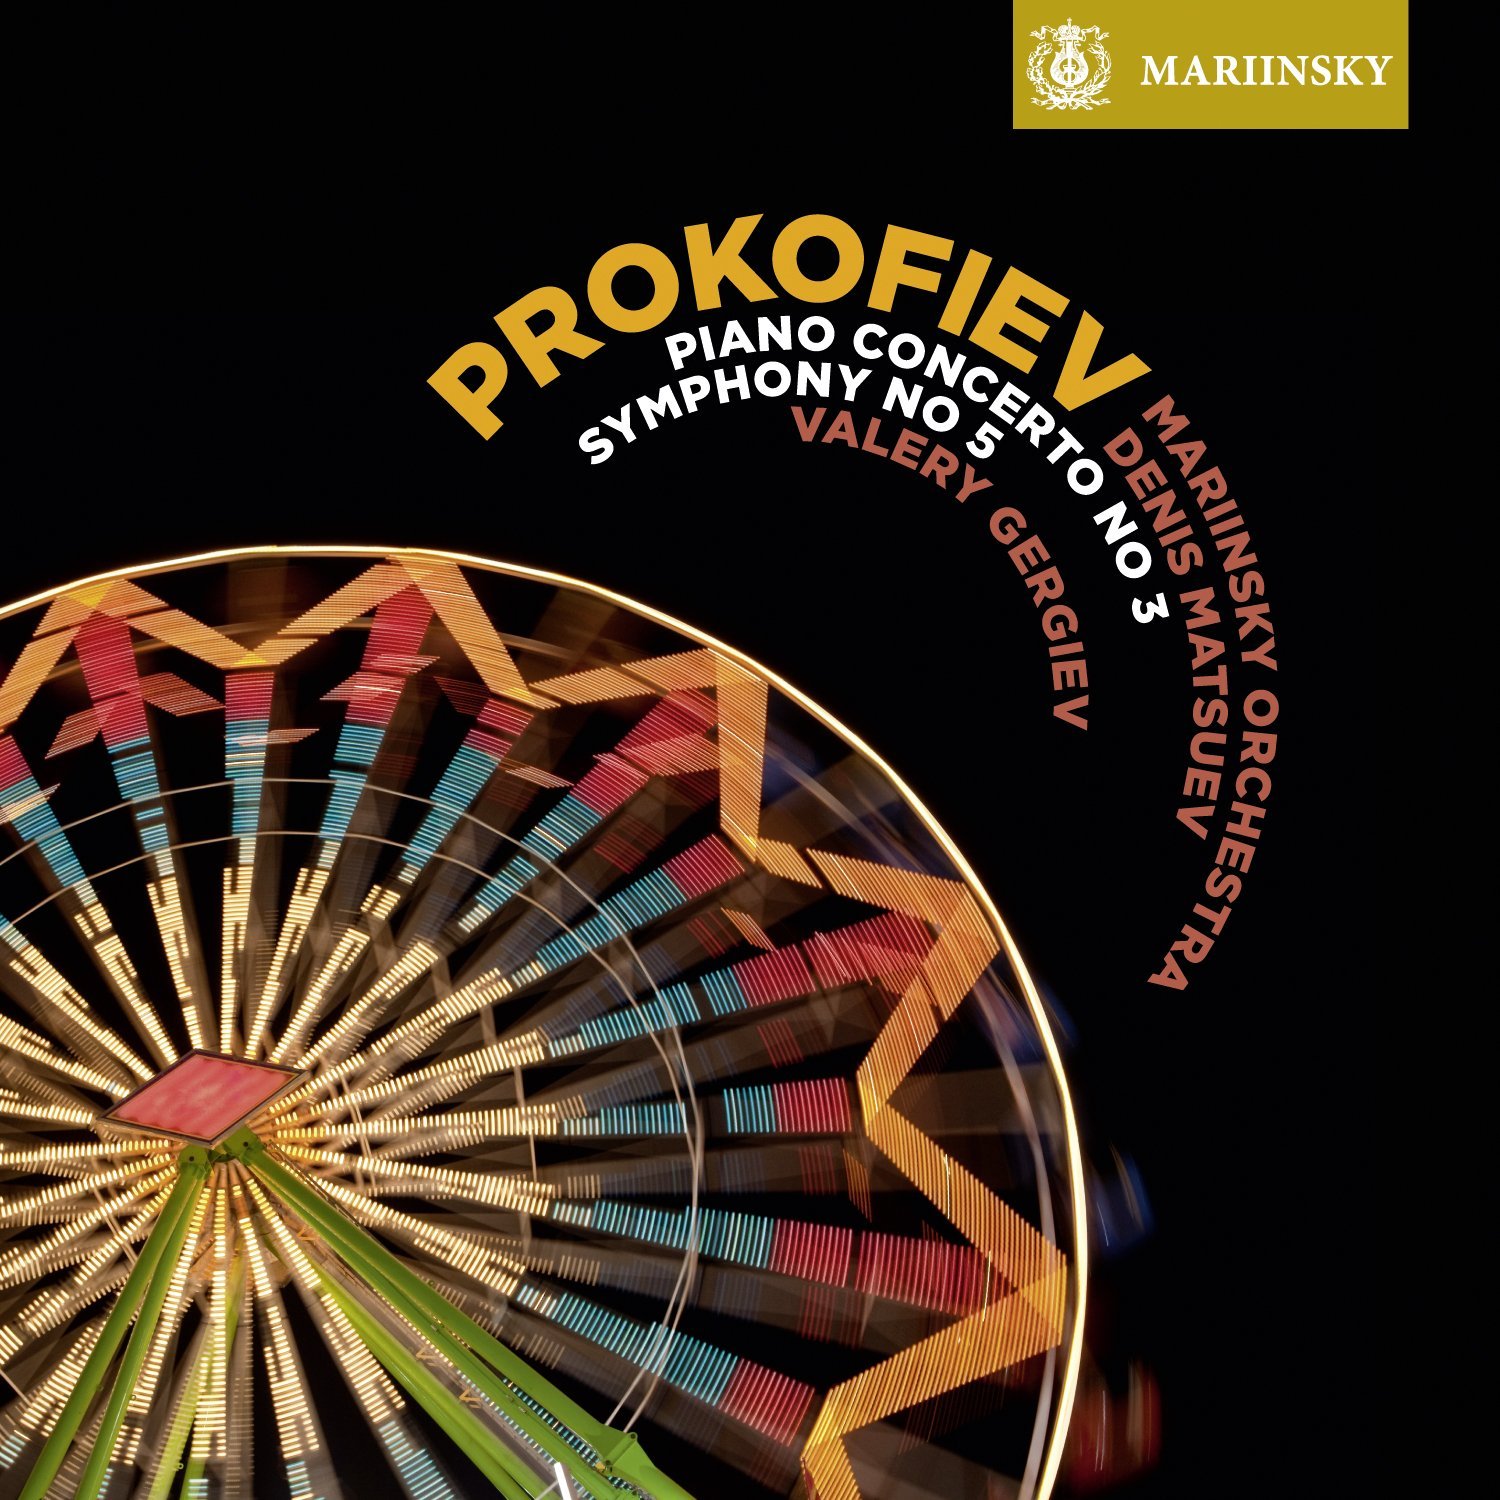 Prokofiev - Symphony No. 5, Piano Concerto No. 3 | Denis Matsuev, Mariinsky Orchestra